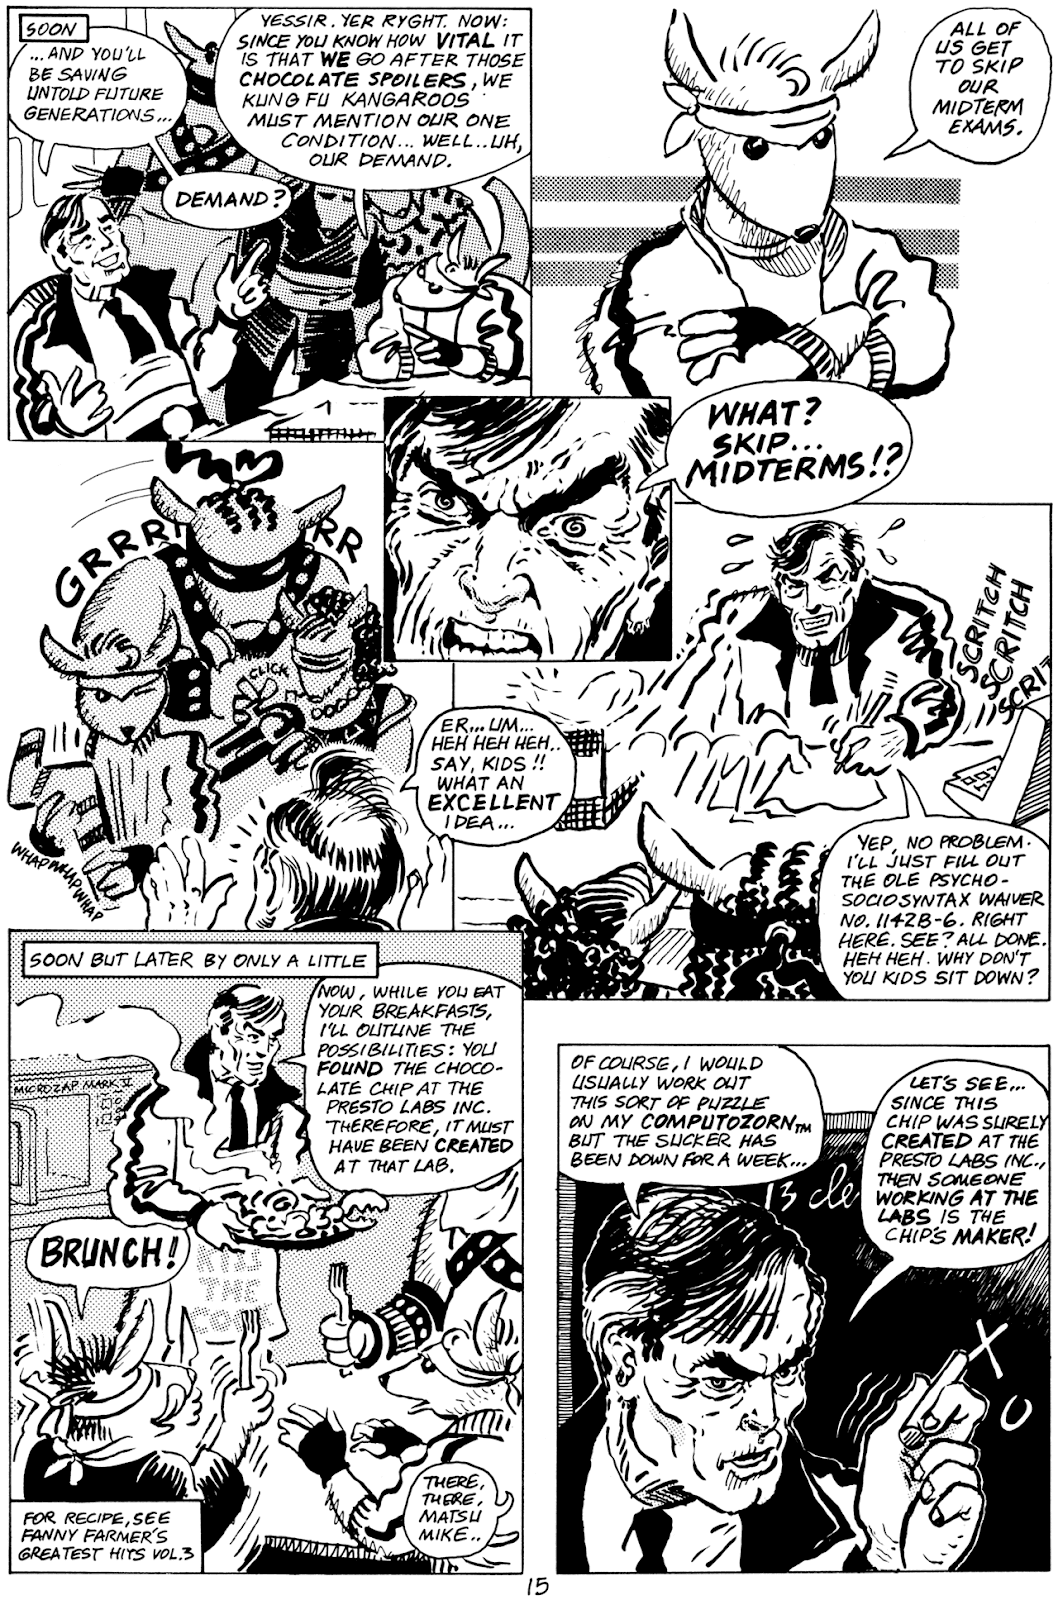 Pre-Teen Dirty-Gene Kung-Fu Kangaroos issue 1 - Page 17